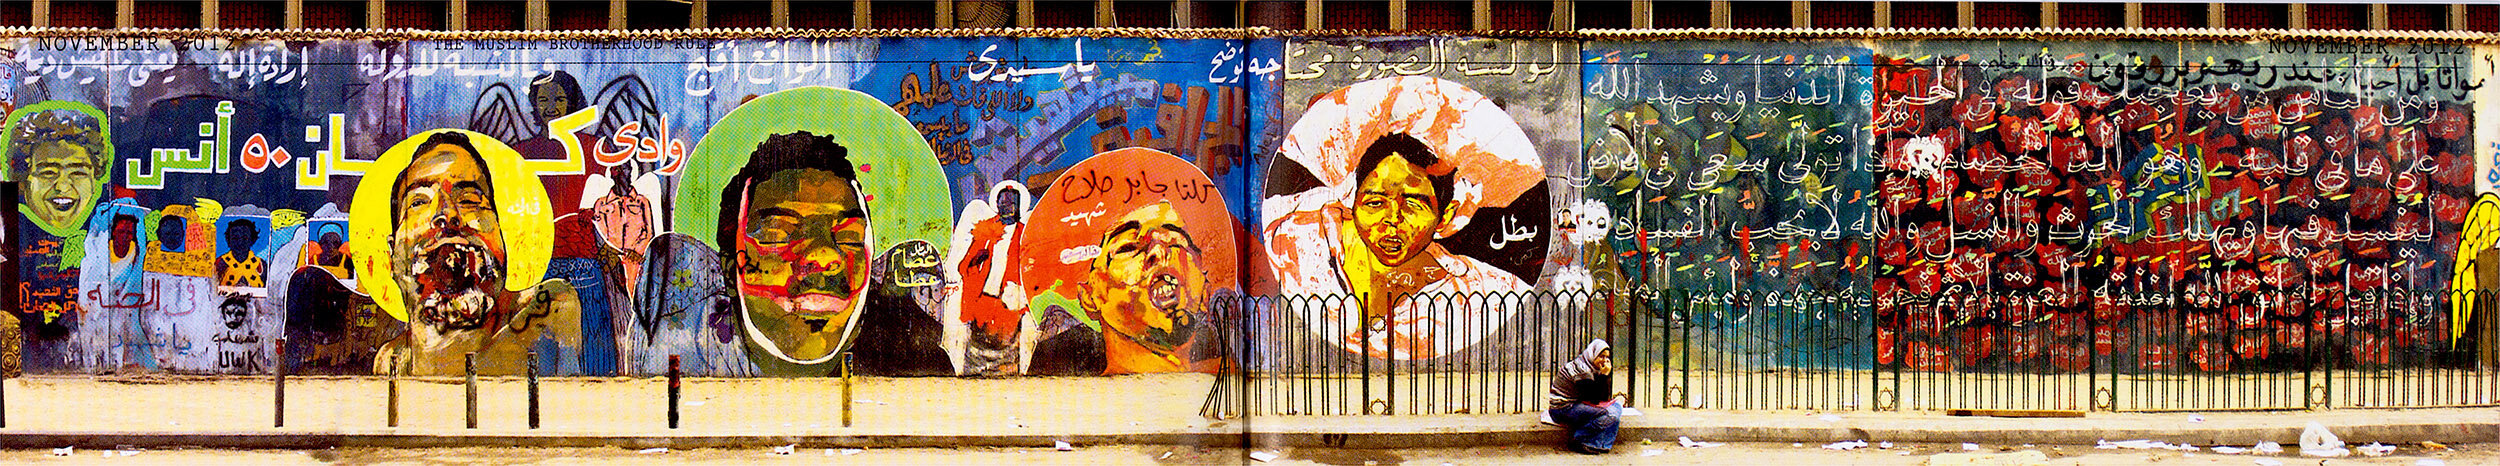 قام الناشط وفنان الجرافيتي عمار أبو بكر بإنشاء لوحة جدارية في شارع محمد محمود في القاهرة تصور الشهداء الذين تعرضوا للتعذيب والقتل على أيدي قوات الأمن